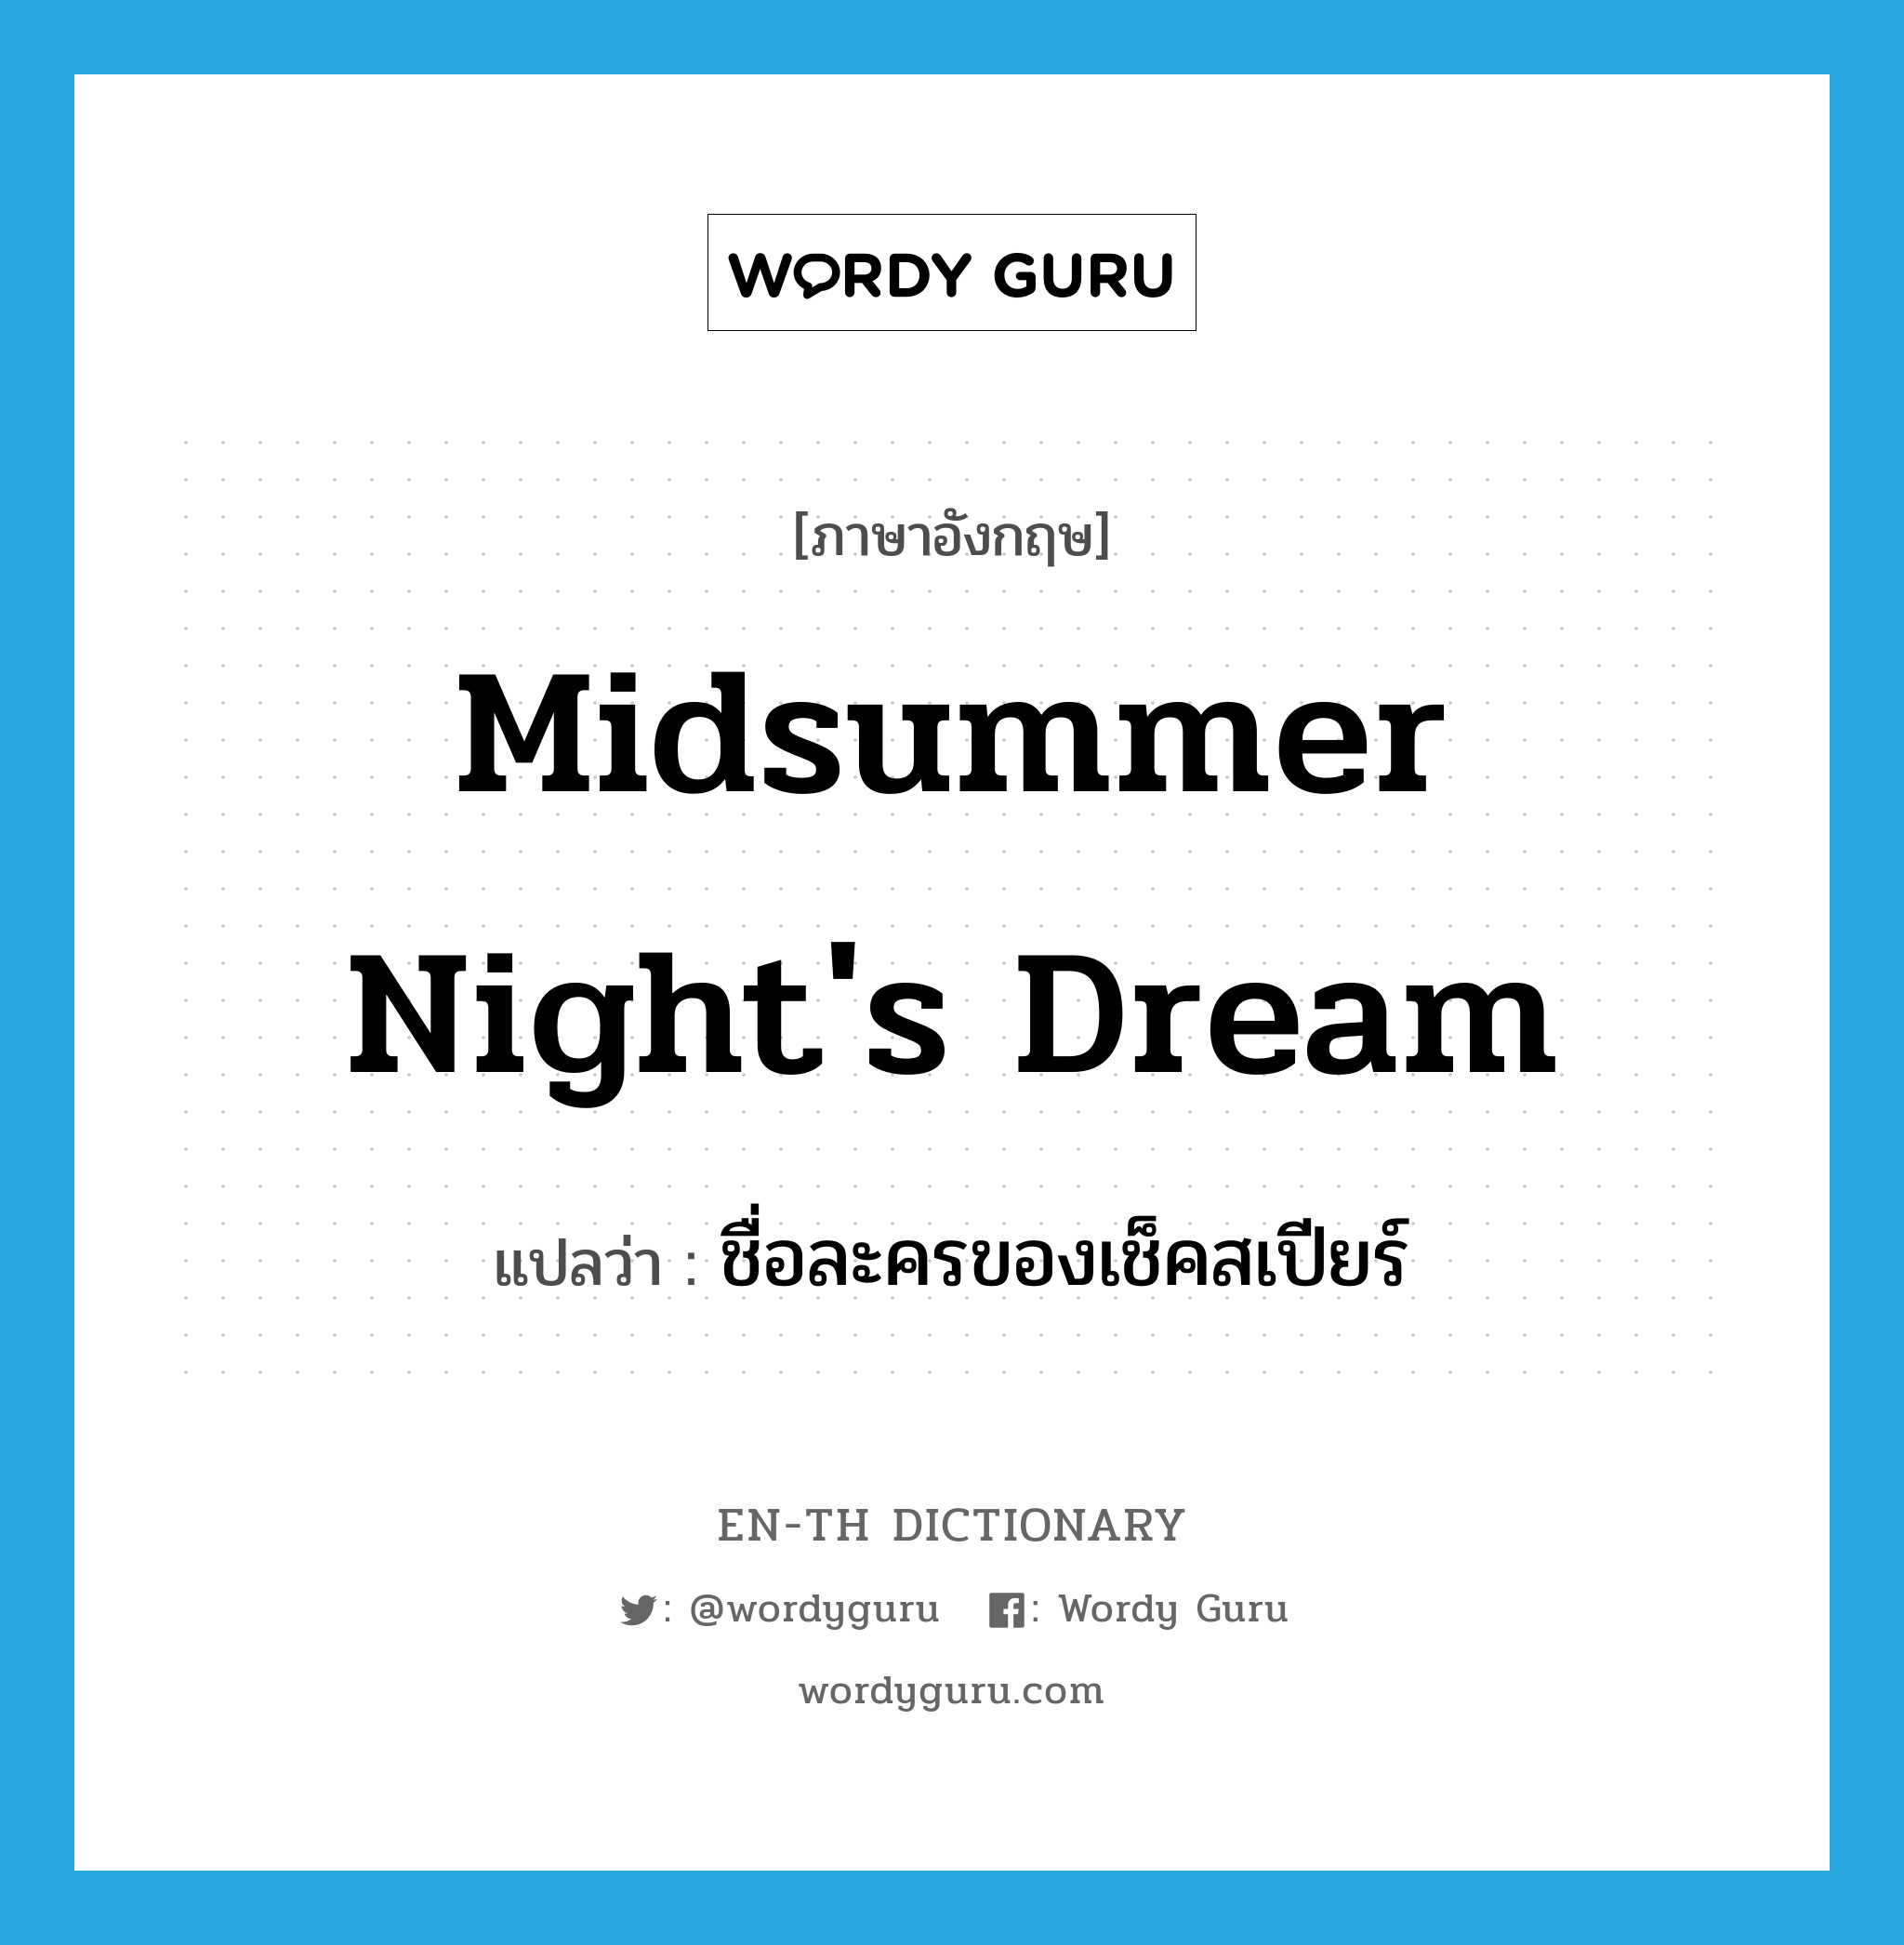 ชื่อละครของเช็คสเปียร์ ภาษาอังกฤษ?, คำศัพท์ภาษาอังกฤษ ชื่อละครของเช็คสเปียร์ แปลว่า Midsummer Night's Dream ประเภท N หมวด N